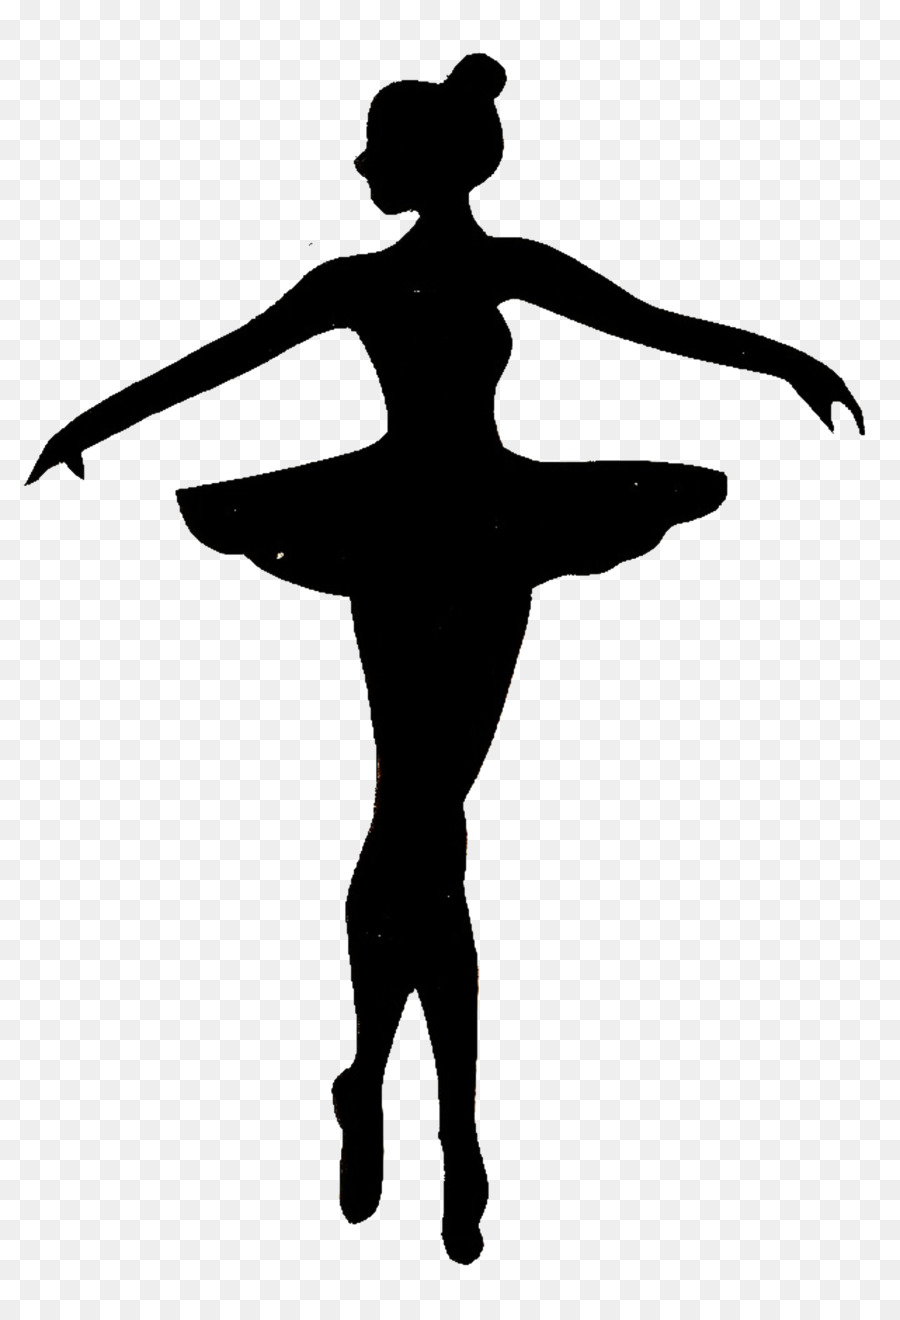 Ballet Dancer Clip art - Ballet PNG Image png download - 3205*4690 - Free Transparent  png Download.